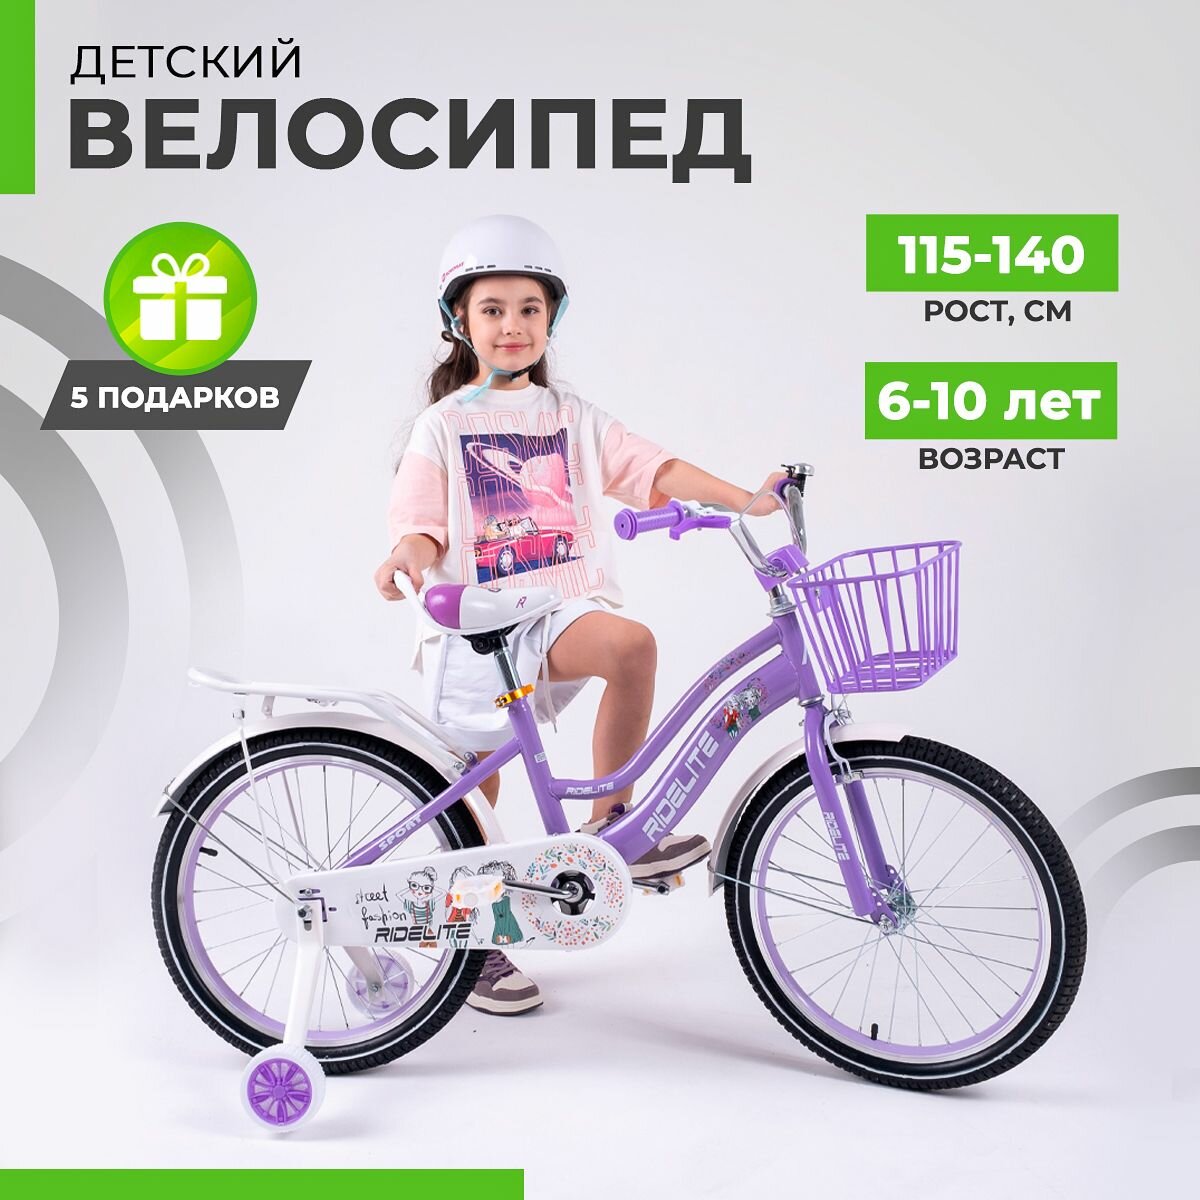 Велосипед детский двухколесный 20", велик для девочек, RIDELITE фиолетовая рама 11", рост 115-140 см